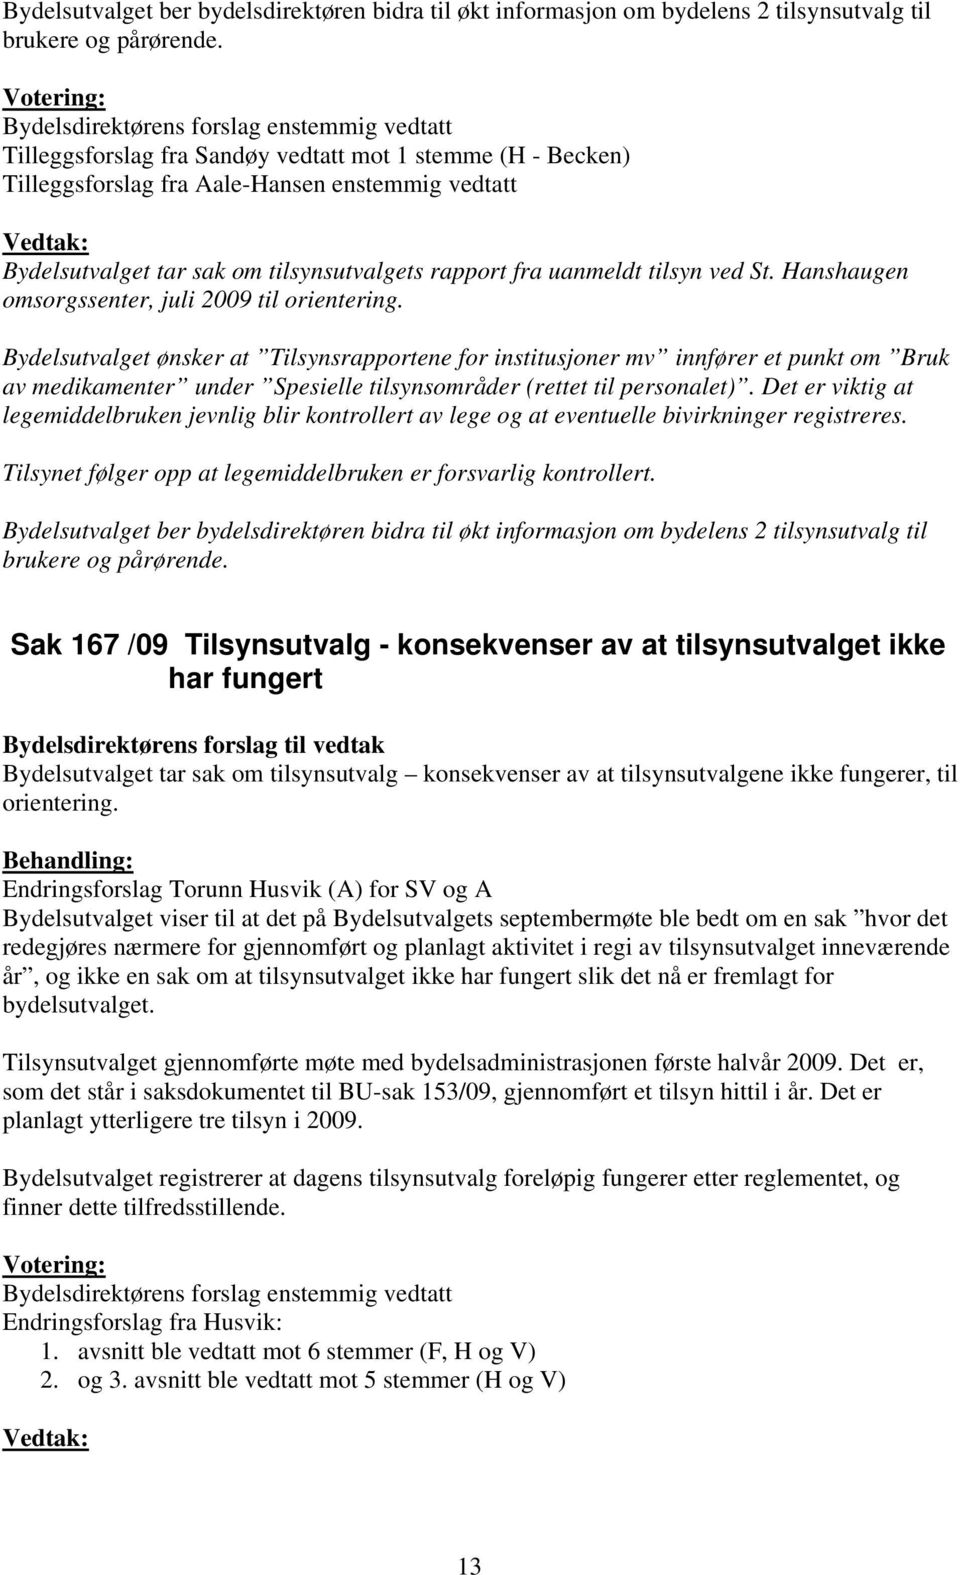 tilsynsutvalgets rapport fra uanmeldt tilsyn ved St. Hanshaugen omsorgssenter, juli 2009 til orientering.